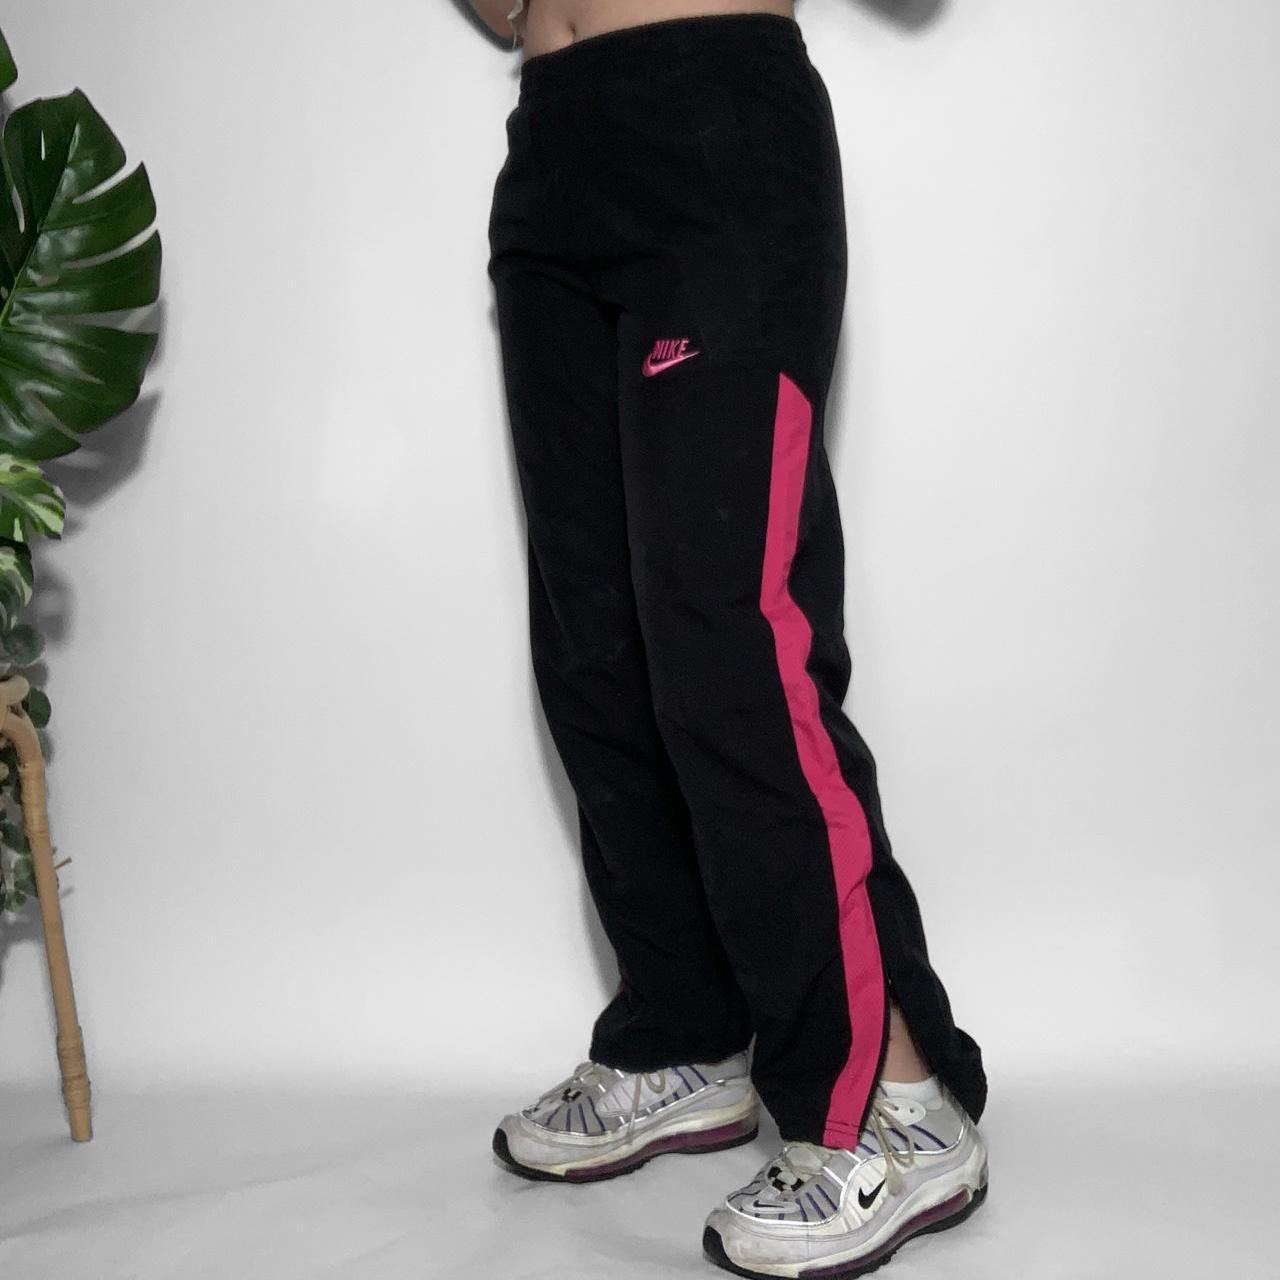 Nike Reflective Men's Vintage Track Pants - Black